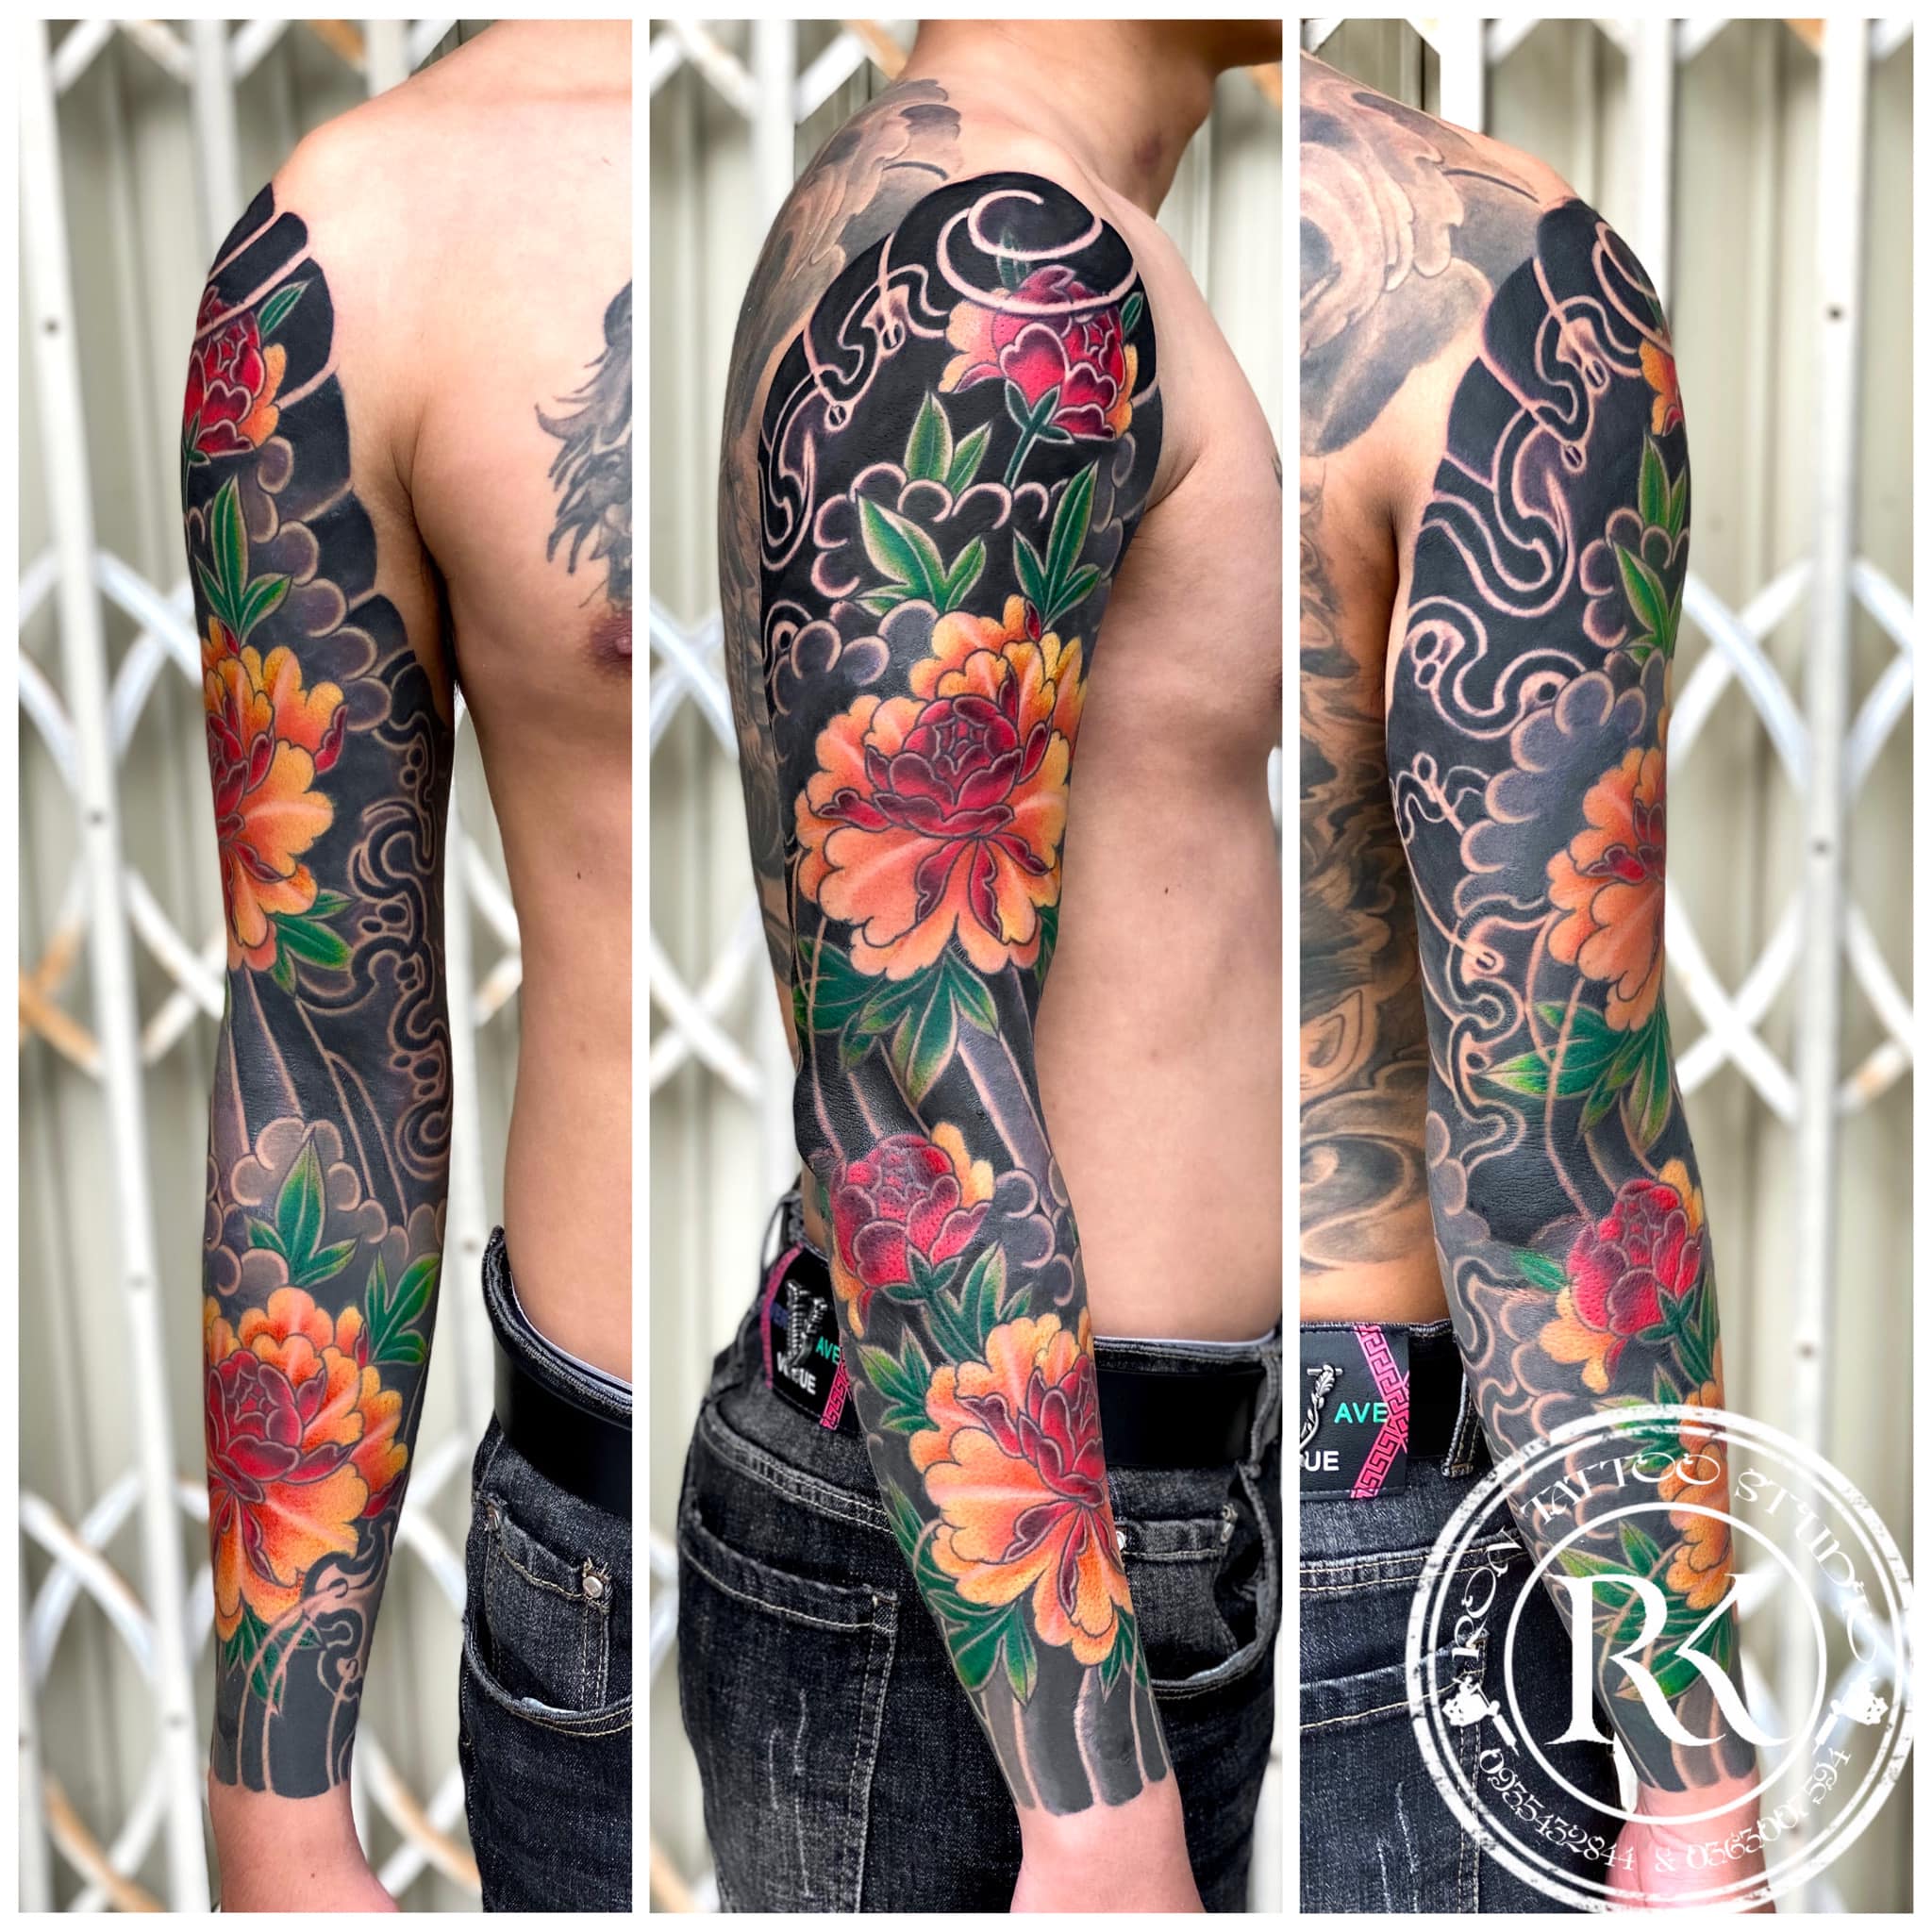 FARM Tattoo Studio  Xăm hình nghệ thuật  Xỏ khuyên Đà Nẵng  Da Nang